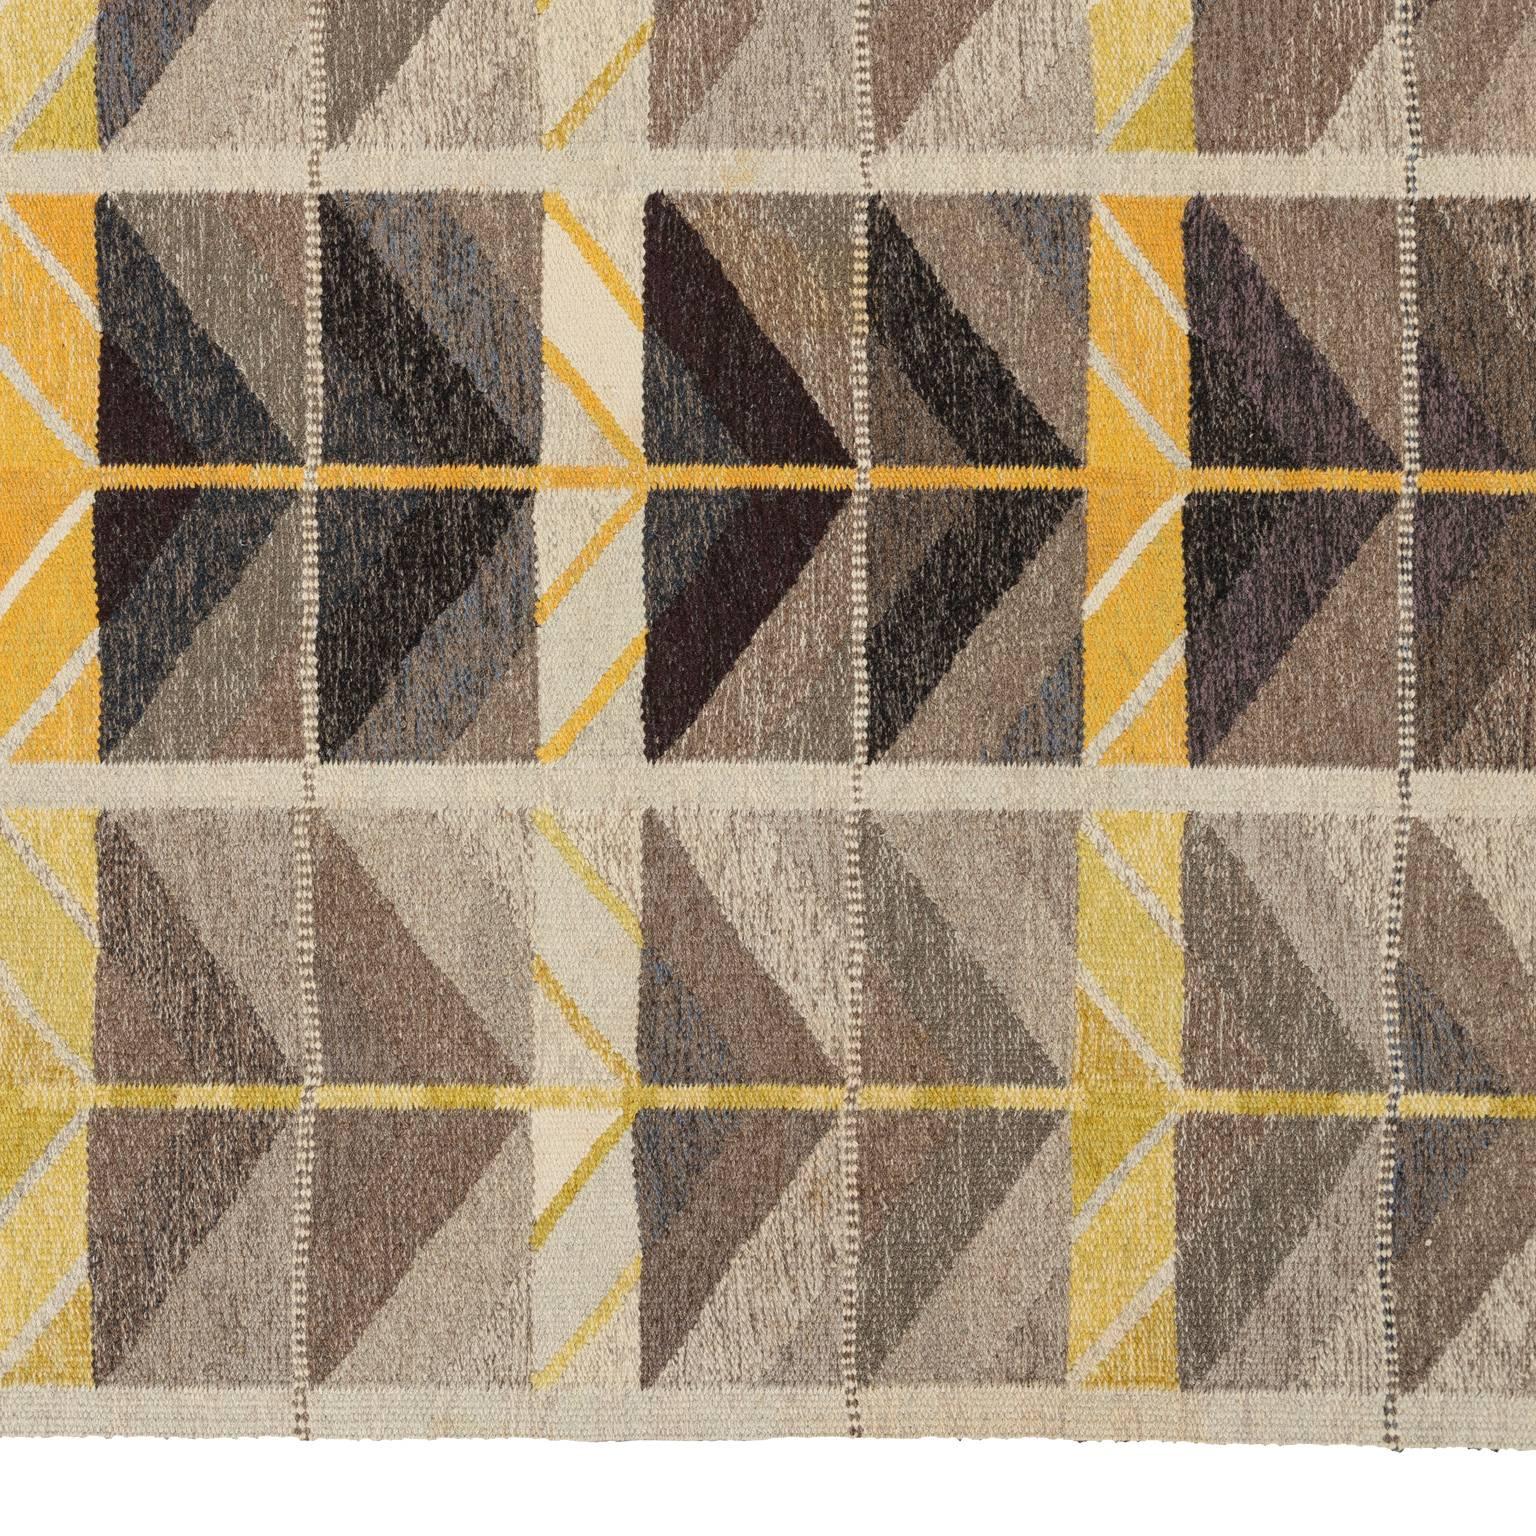 Wool Vintage Scandinavian Modern Rug, Diagonals Carpet by Ingrid Dessau For Sale